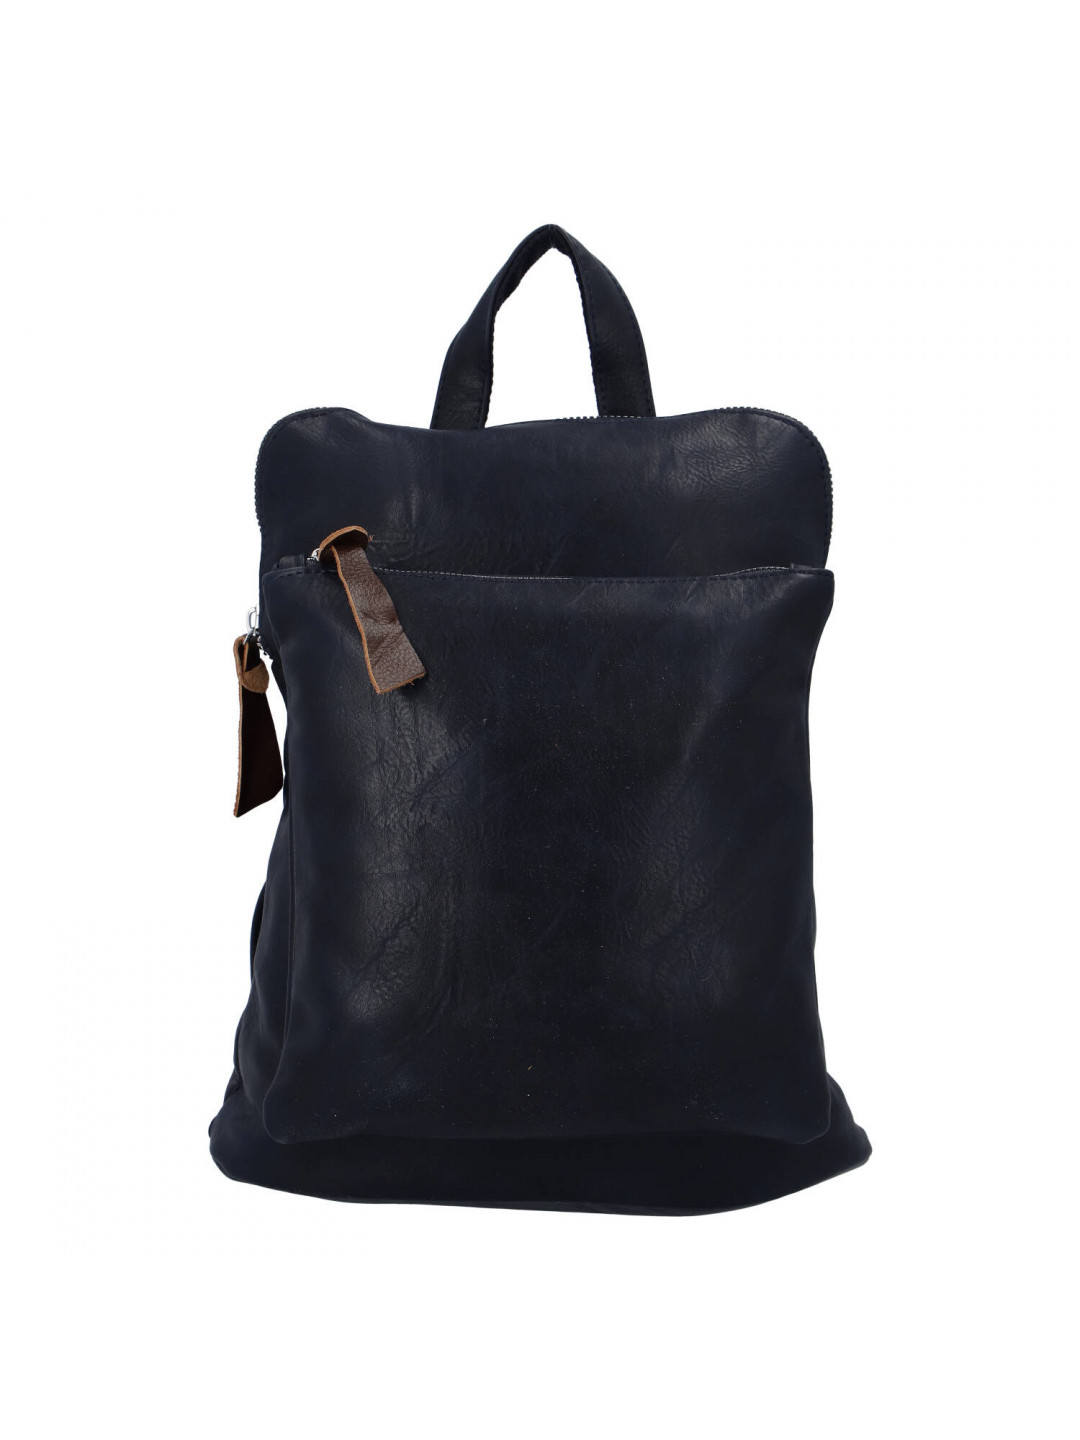 Dámský městský batoh kabelka tmavě modrý – Paolo Bags Buginni